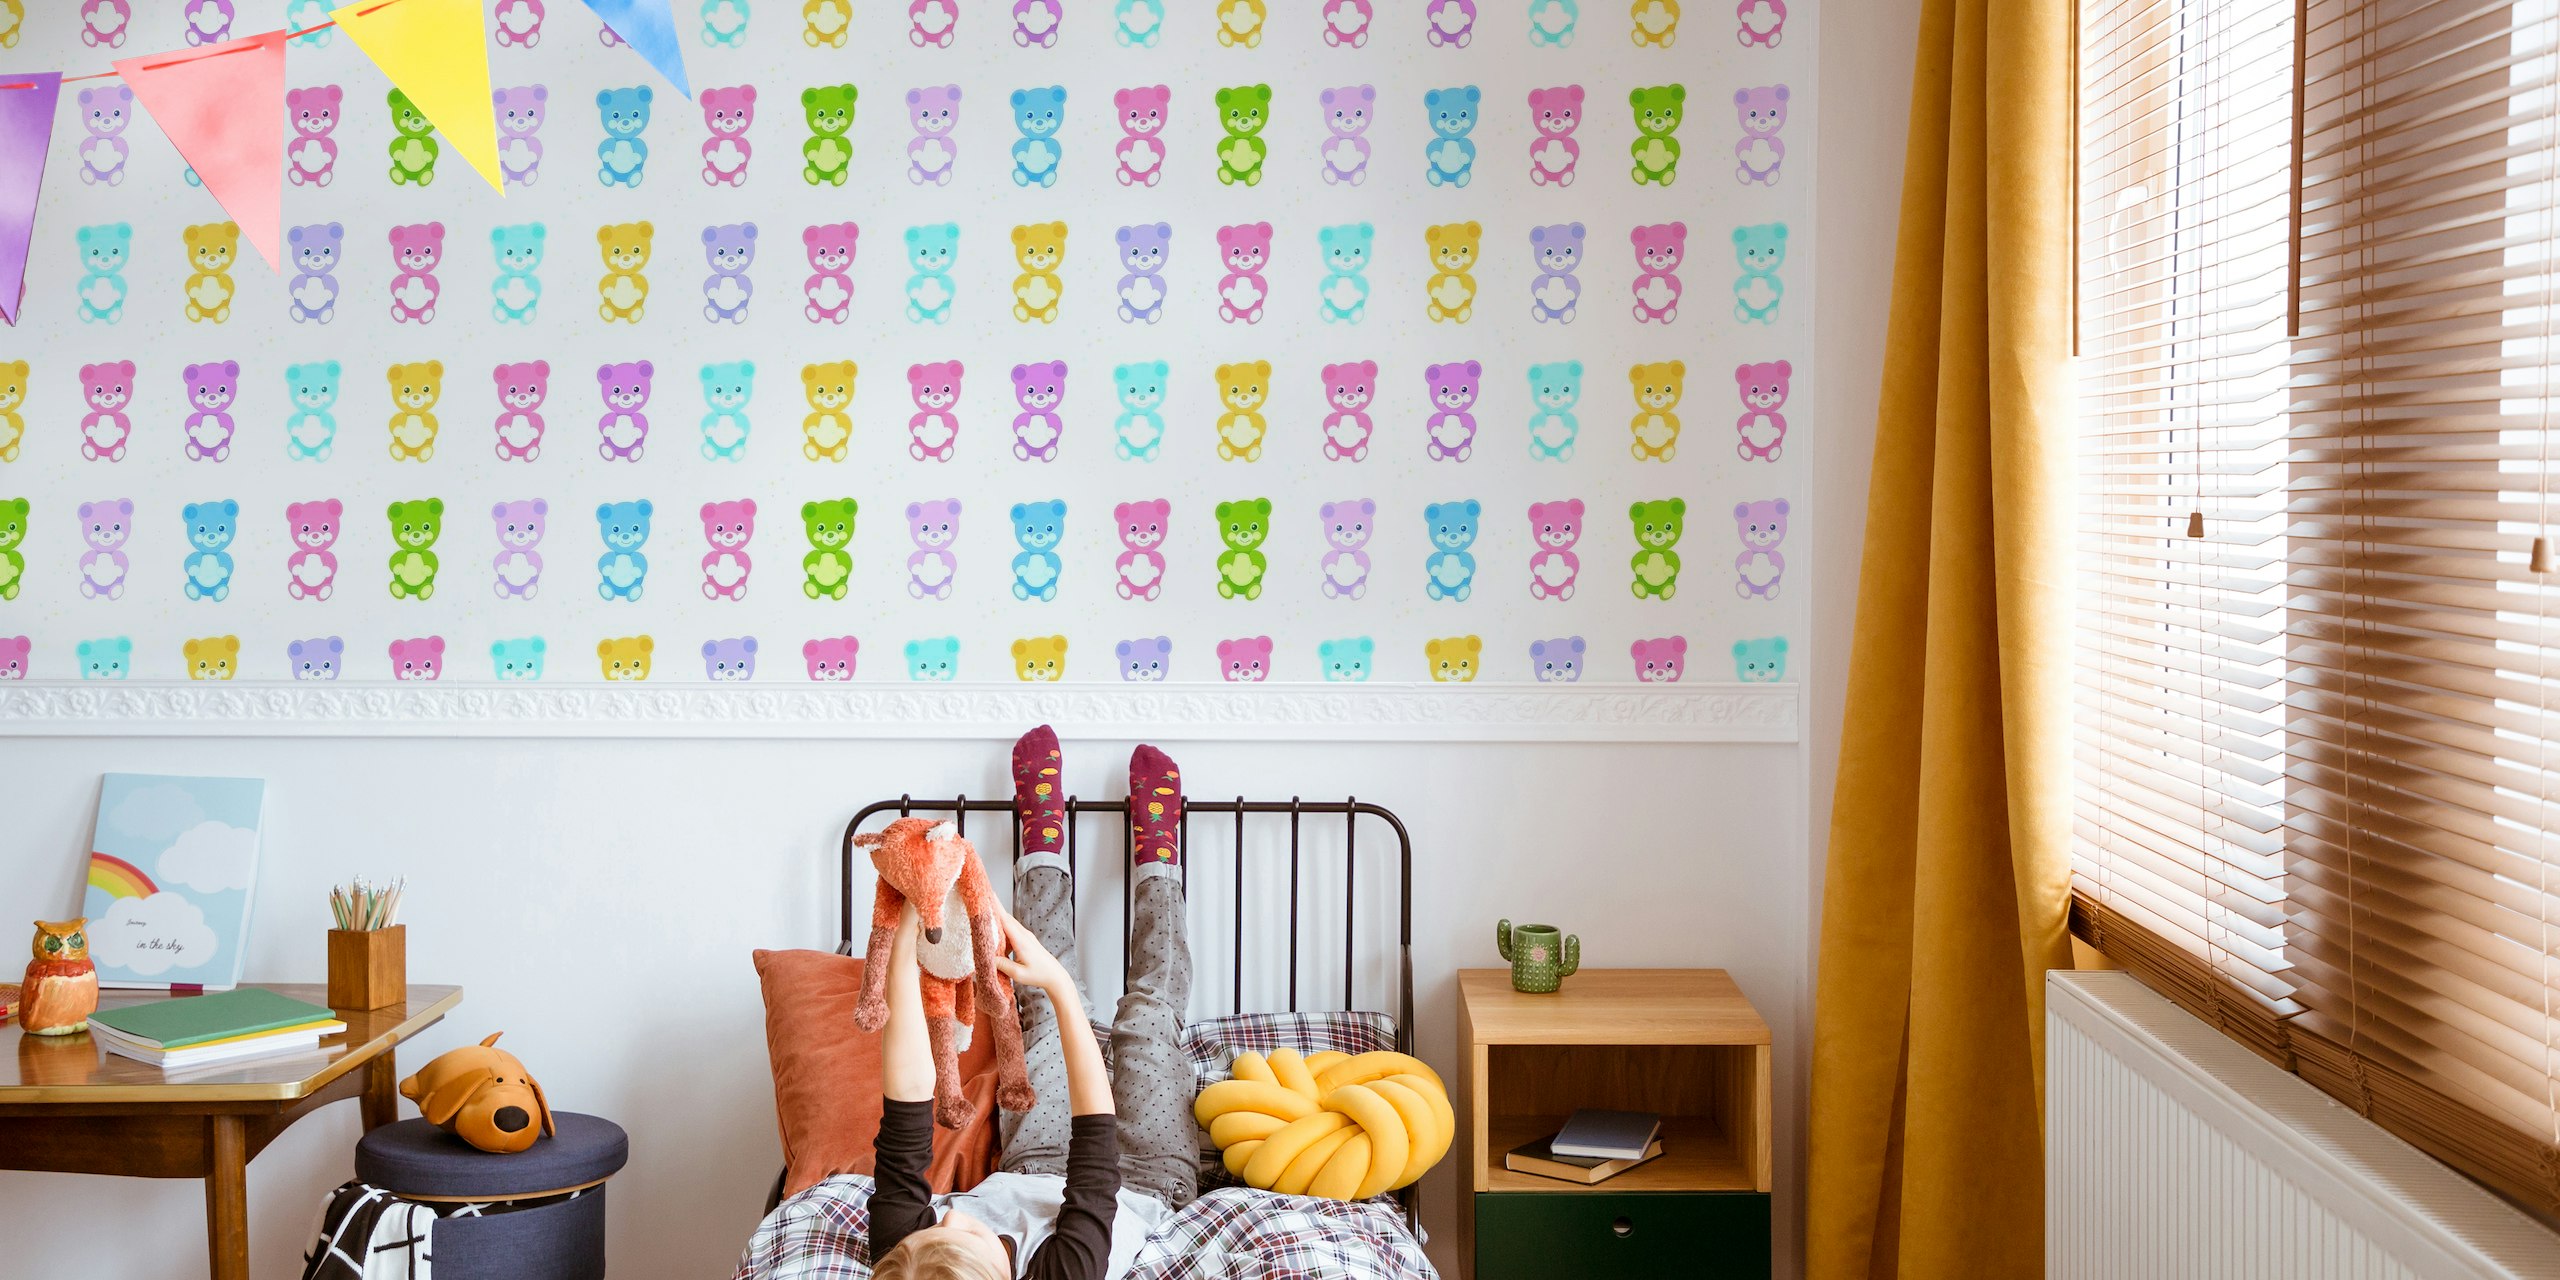 fotomural vinílico de parede com padrão de ursinhos de pelúcia coloridos para quartos de crianças